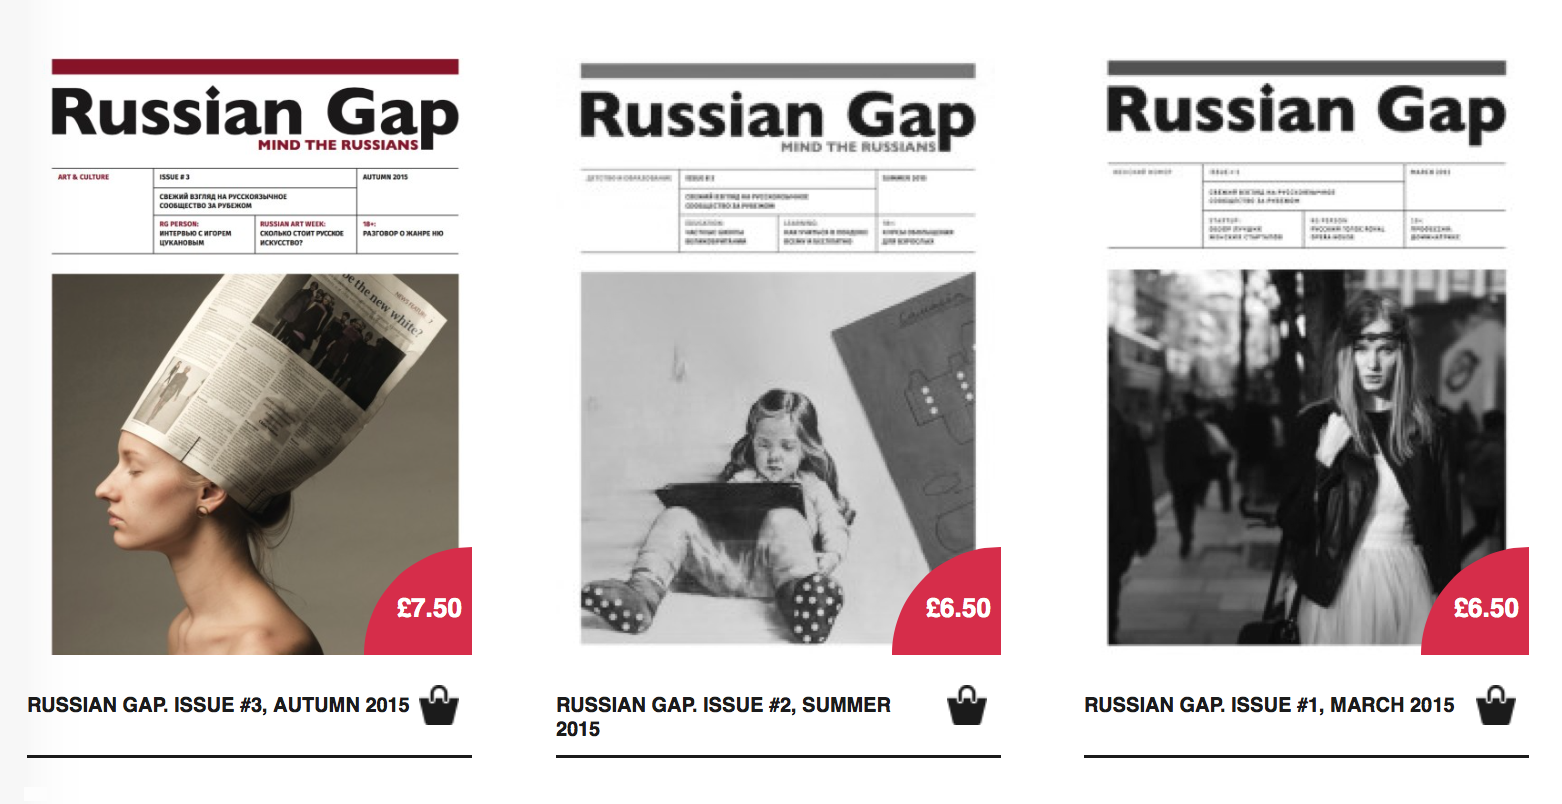 Журналы продавались через онлайн-магазин на сайте Russian Gap. Первую версию магазина я настраивала сама, подключив оплату через «Пэйпэл», и изрядно намучилась в процессе. Во второй версии сайта мы подключили «Страйп» — систему, которая напрямую принимала карты для оплаты